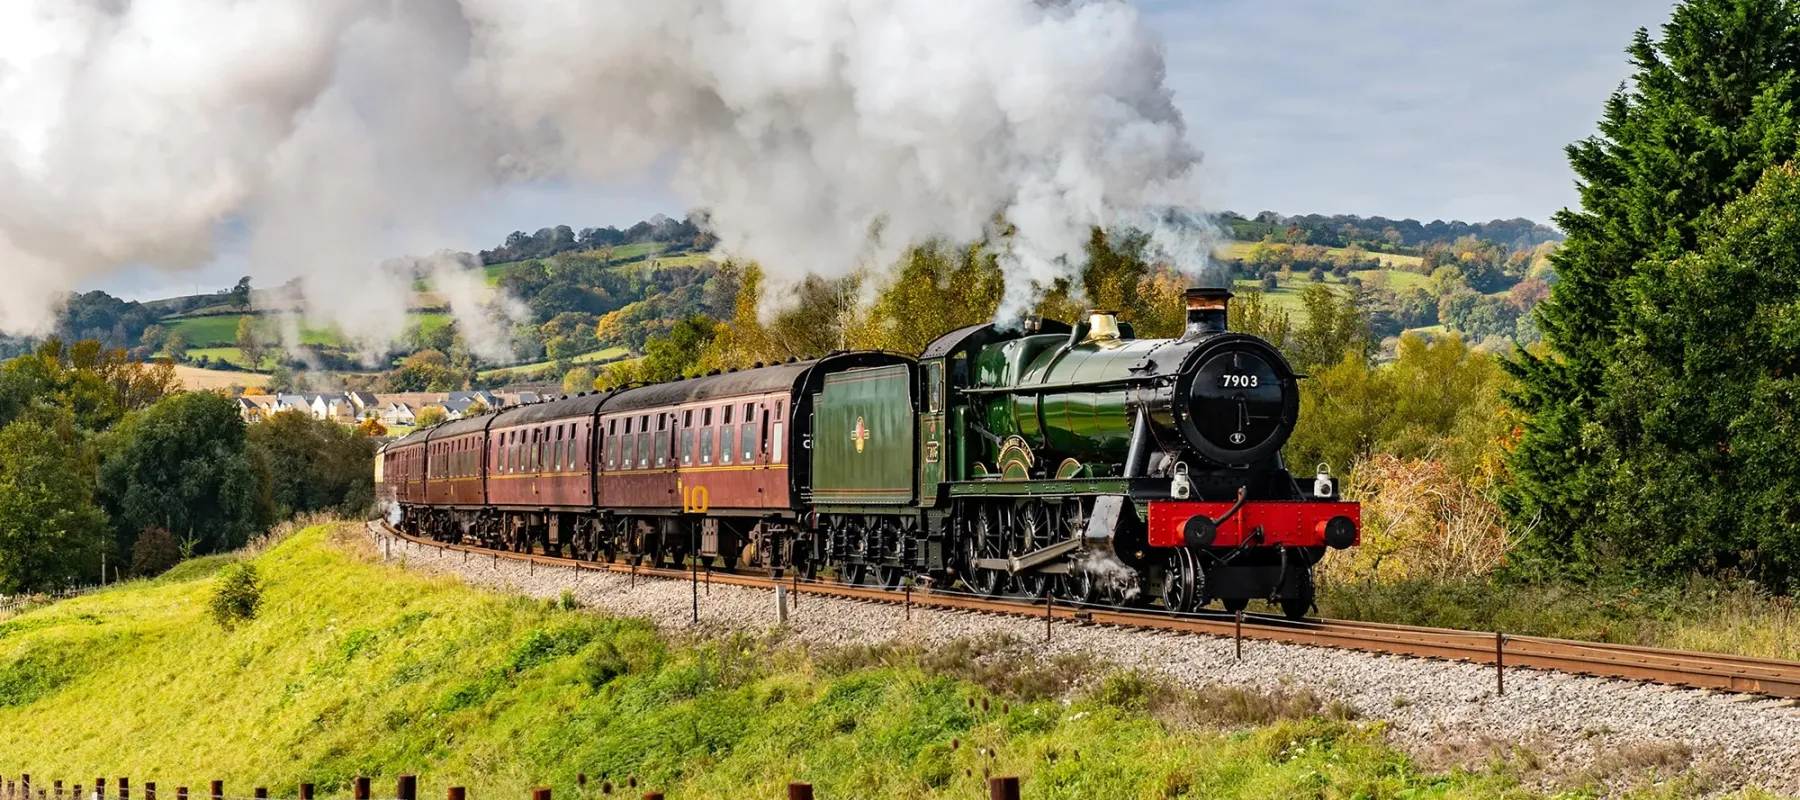 Gloucestershire warwickshire steam railway